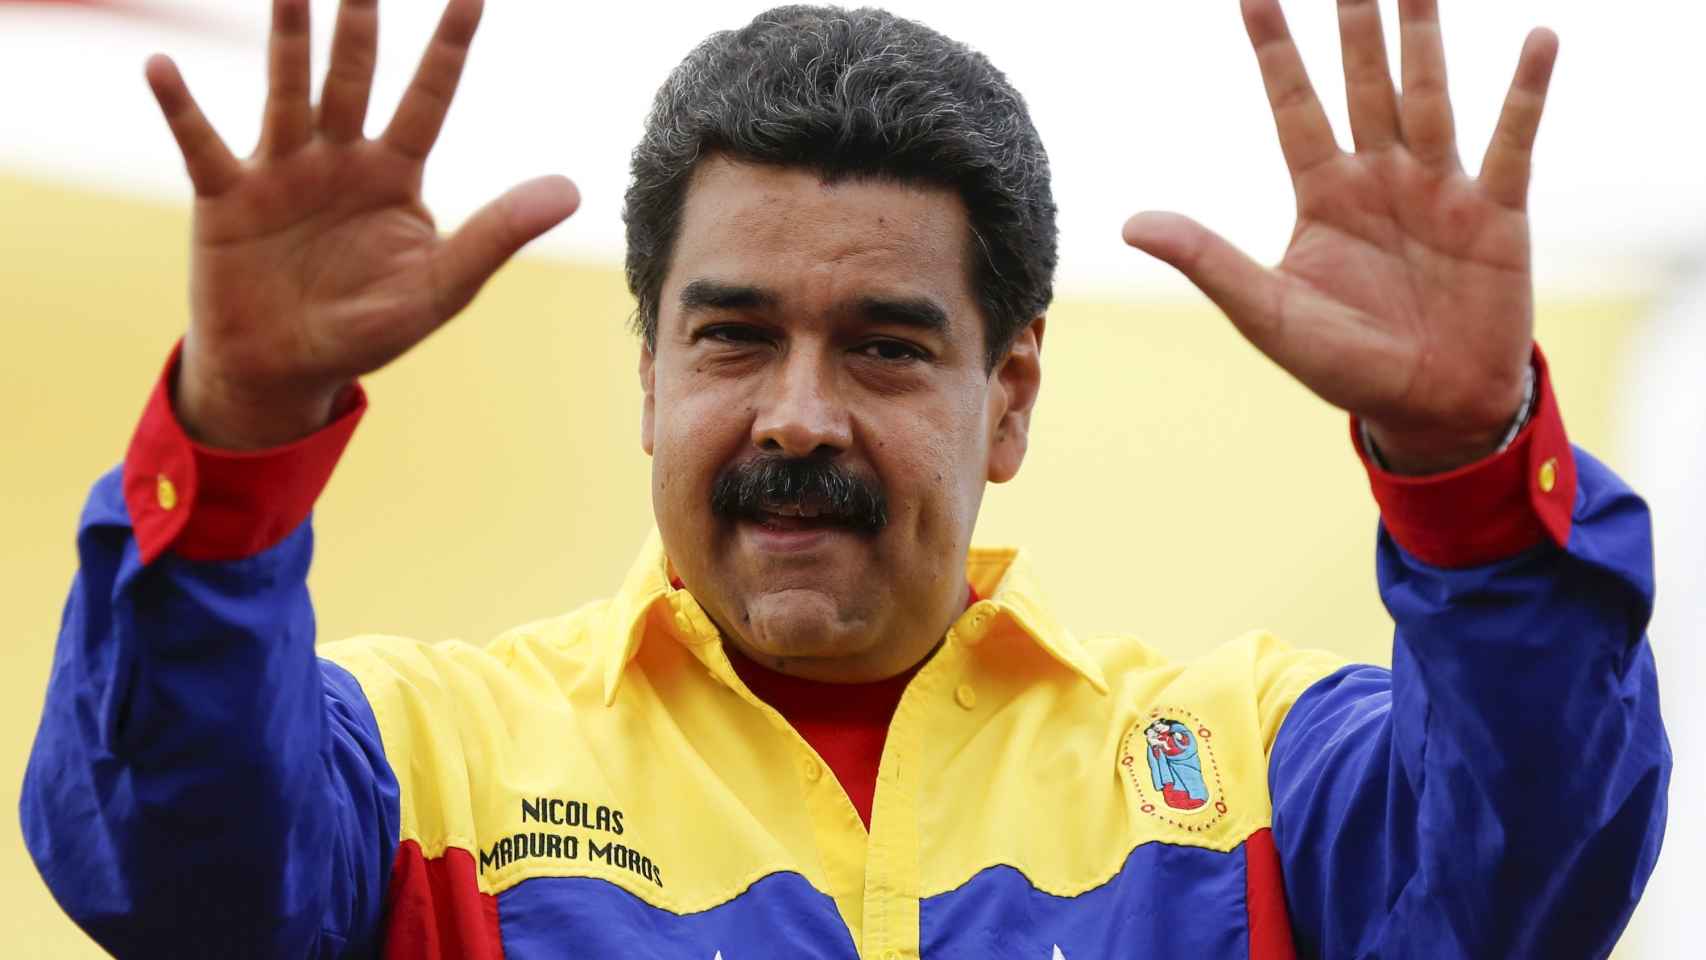 Nicolas Maduro gesticula durante la última campaña.